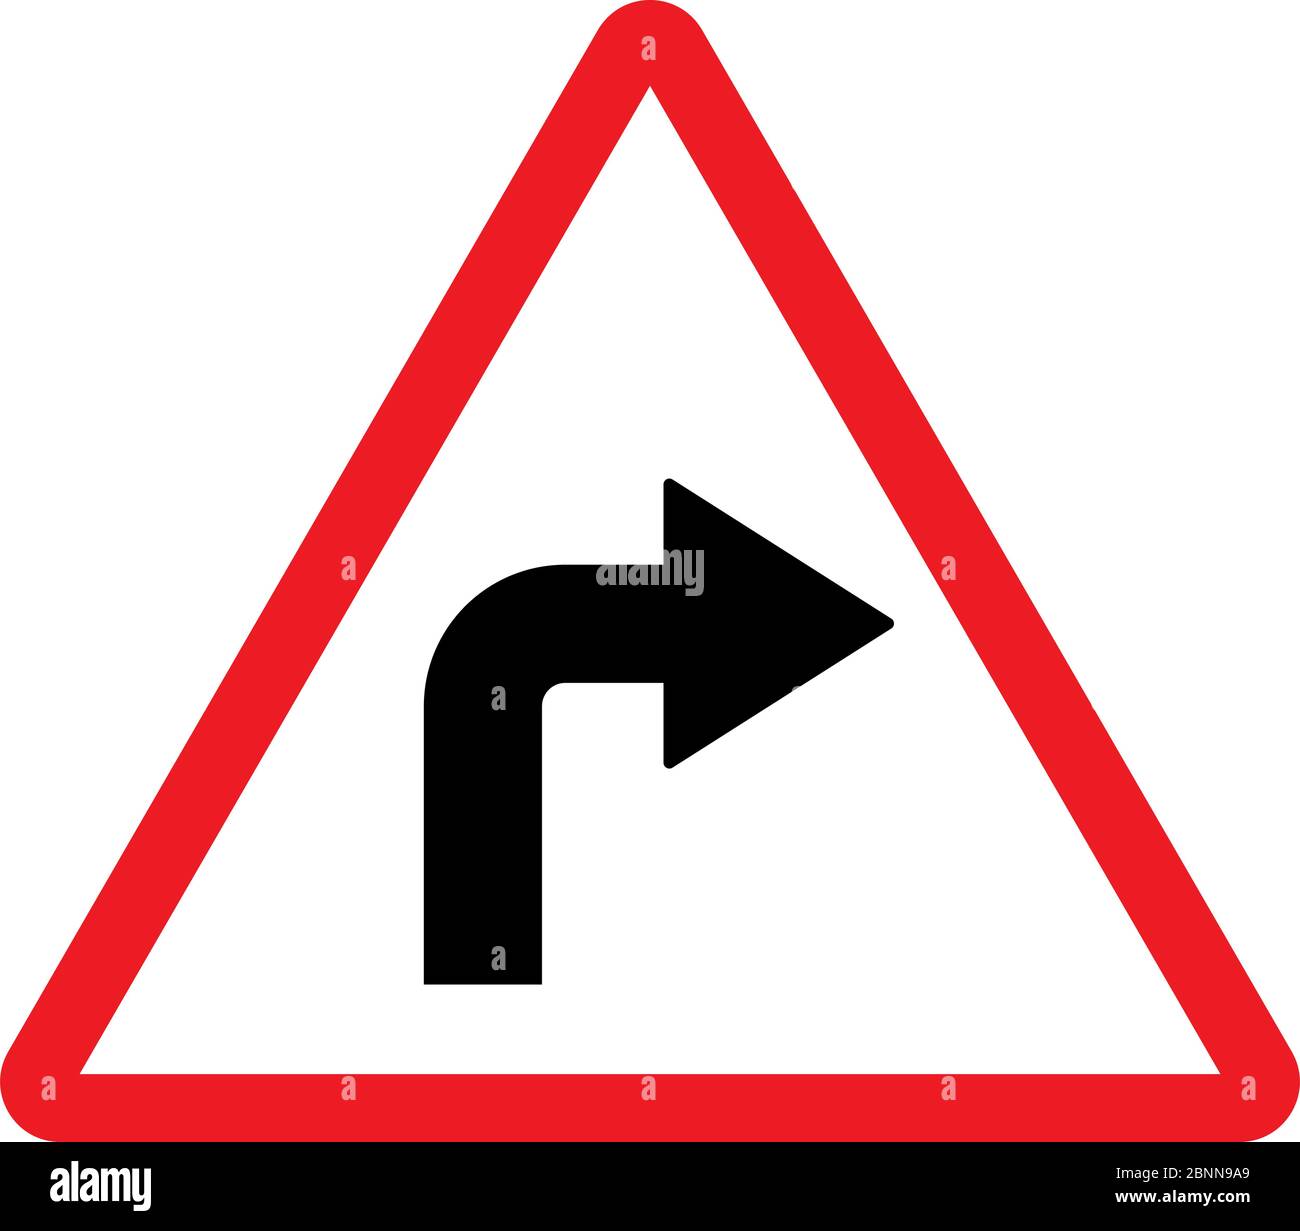 Illustrazione del segnale stradale di svolta a destra. Palo triangolare rosso. Simbolo di avvertenza traffico stradale. Illustrazione Vettoriale